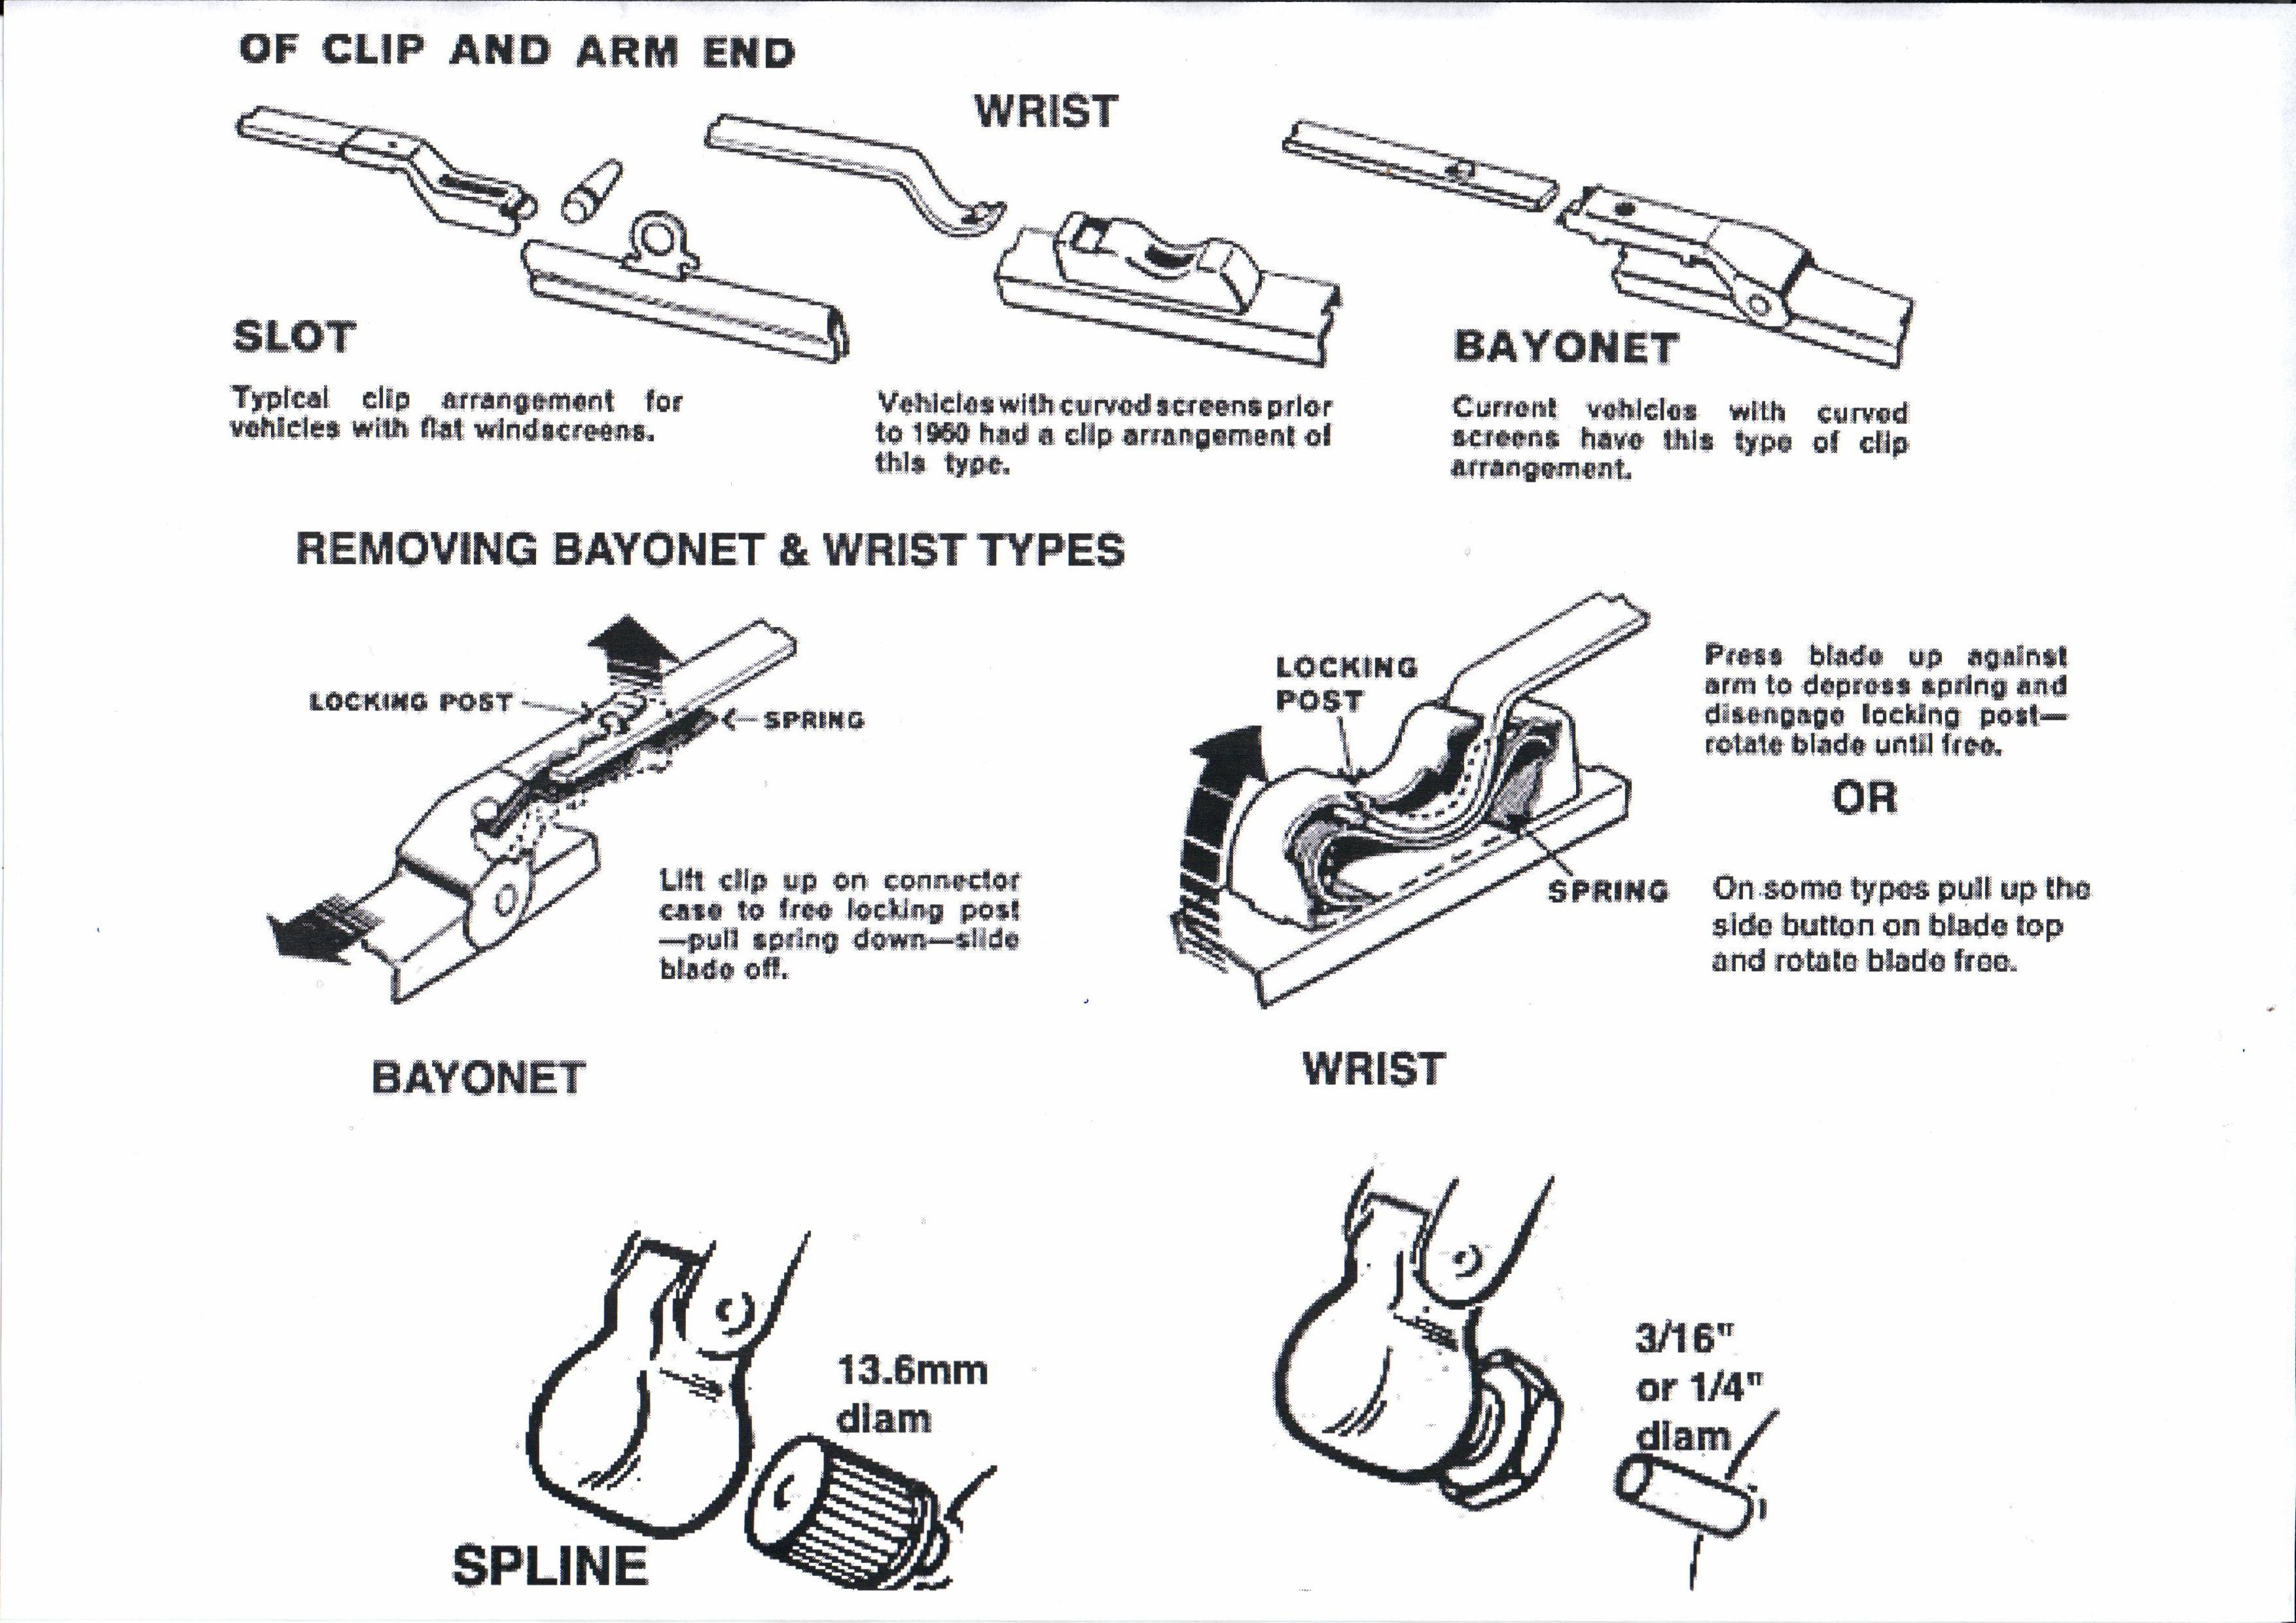 wiper arm - wrist-shaft